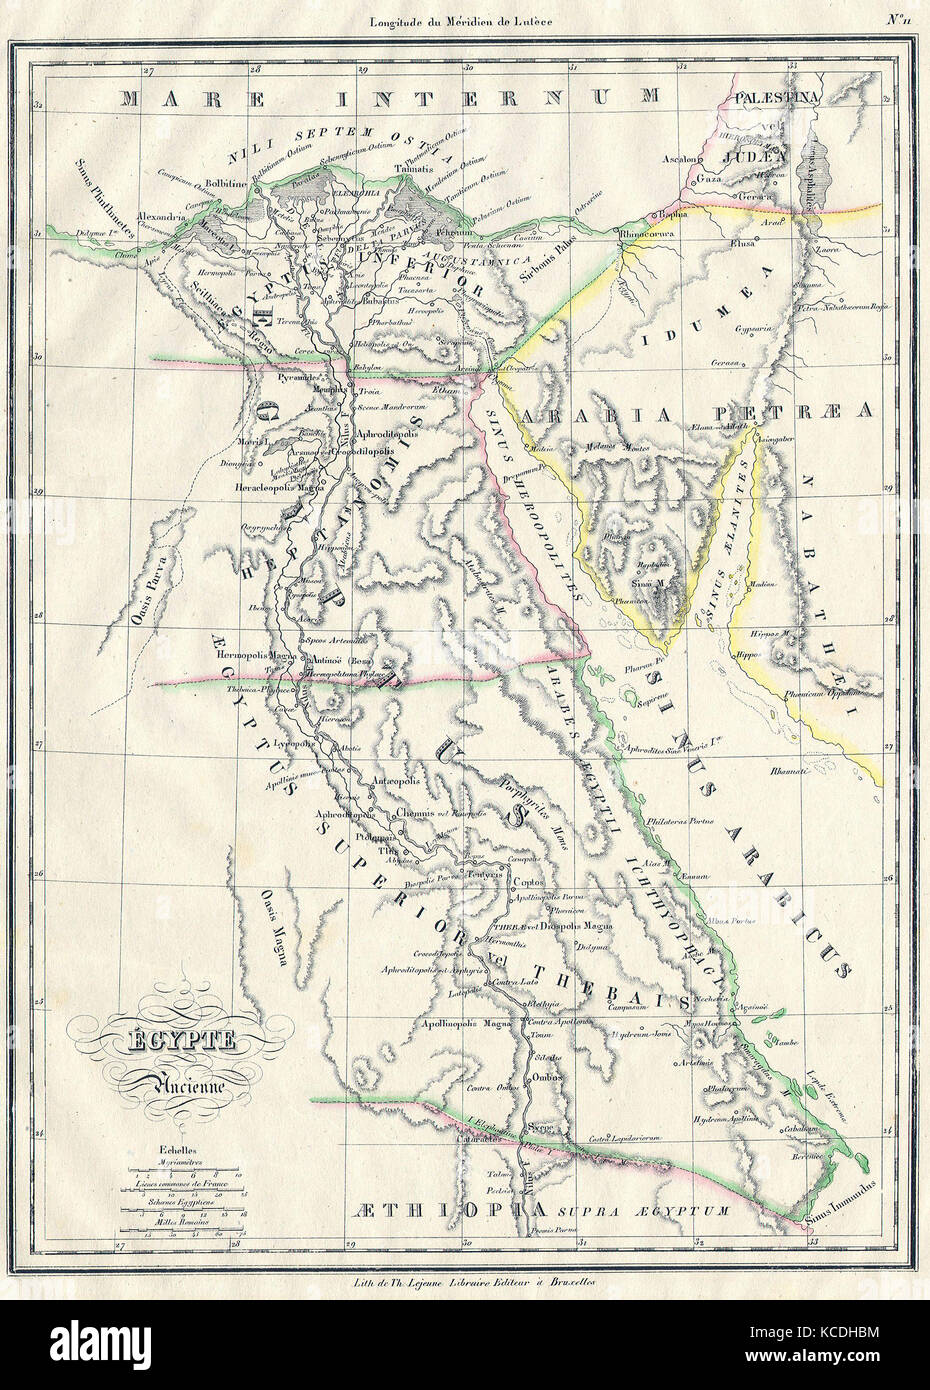 1837 Malte-Brun Karte des alten Ägypten, Nubien, Äthiopien, Sudan und Abessinien Stockfoto